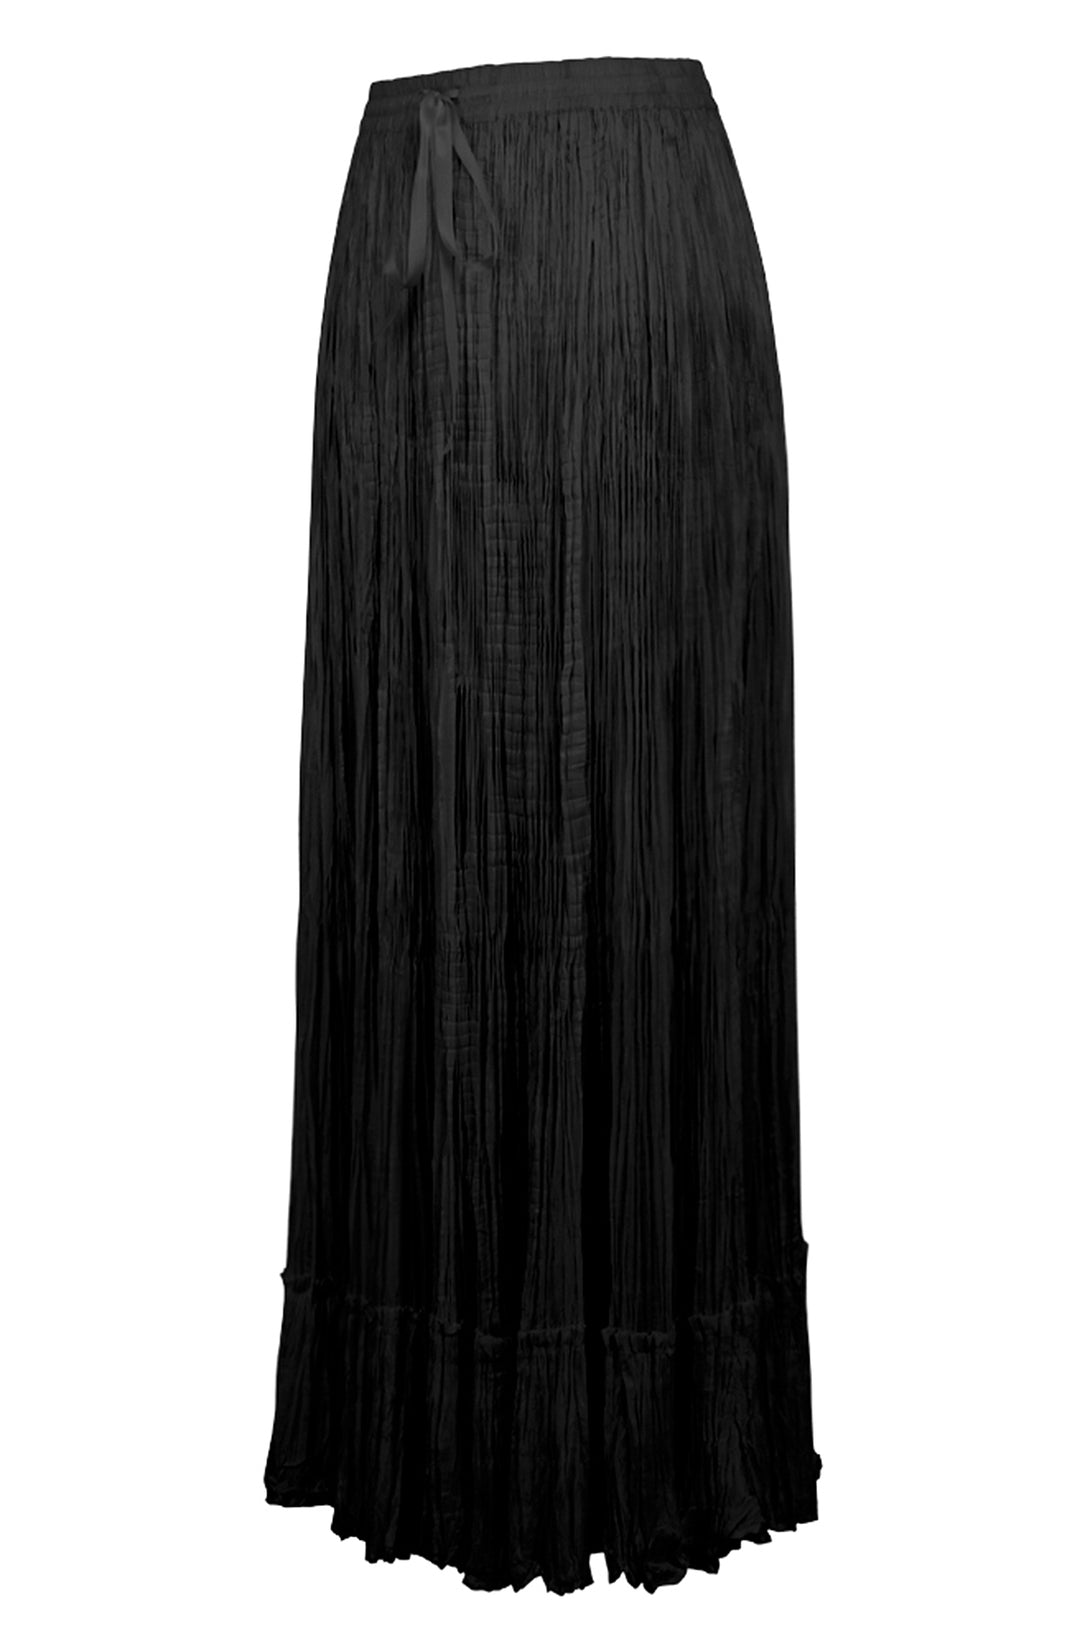 Guinevere Bridgerton Black Skirt 2